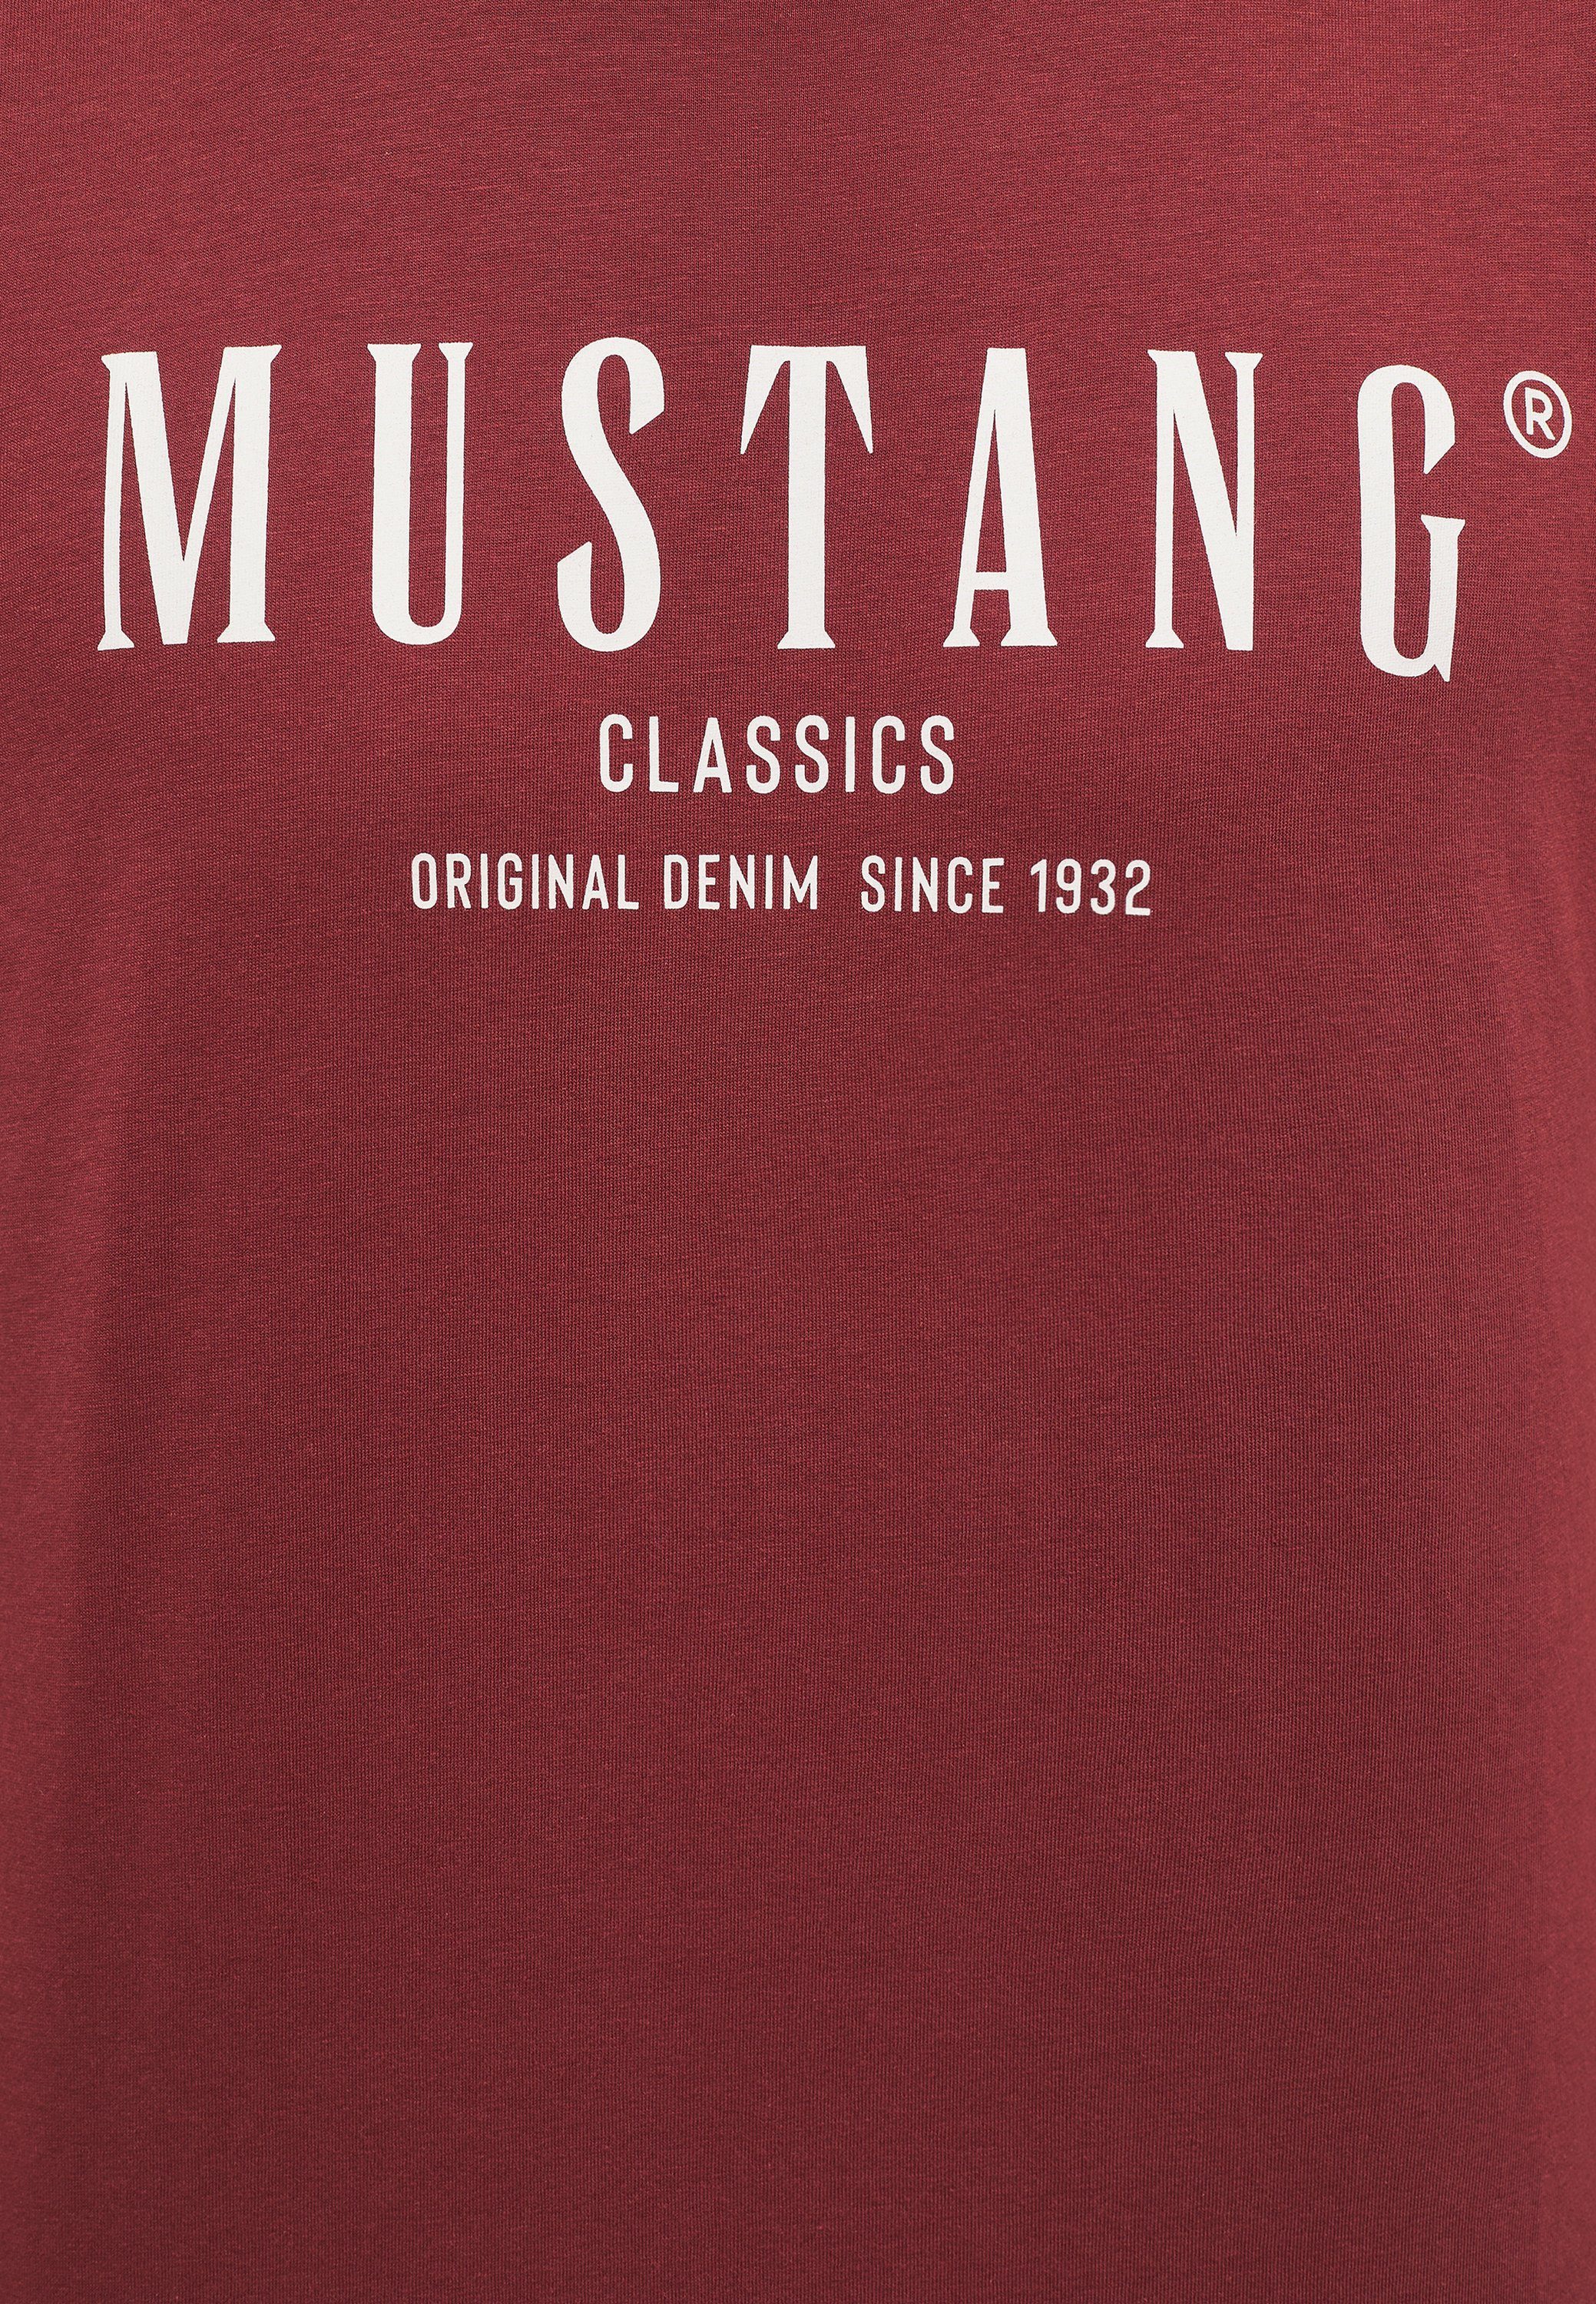 MUSTANG Kurzarmshirt Mustang Print-Shirt dunkelrot